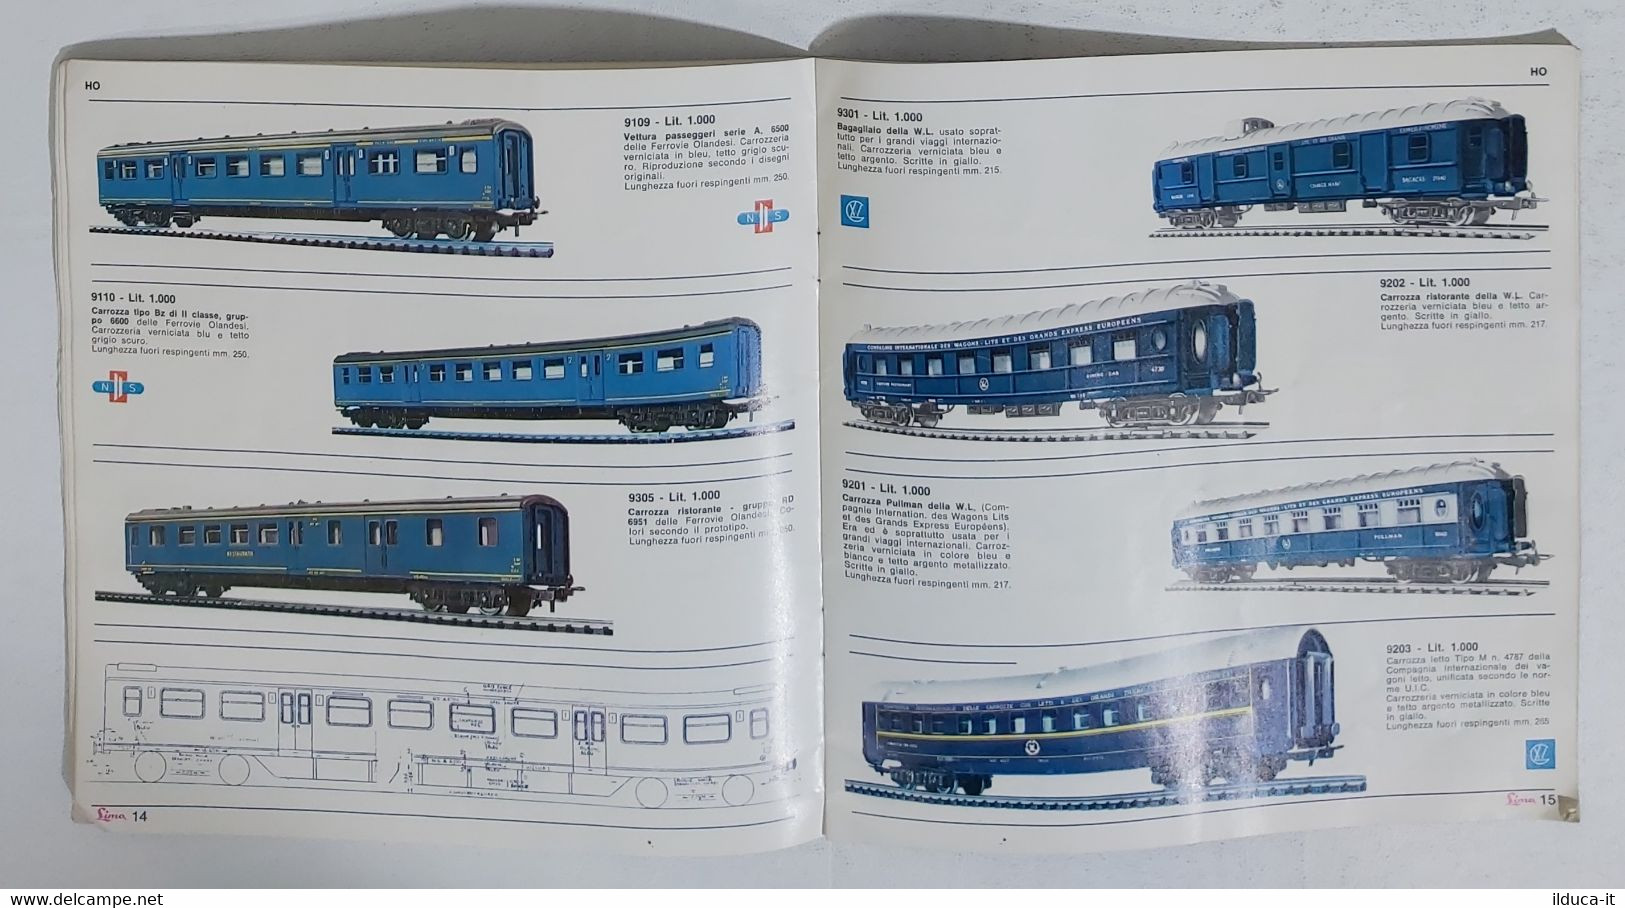 01921 Catalogo Modellismo Ferroviario Lima - X Edizione 1966-67 - Italia